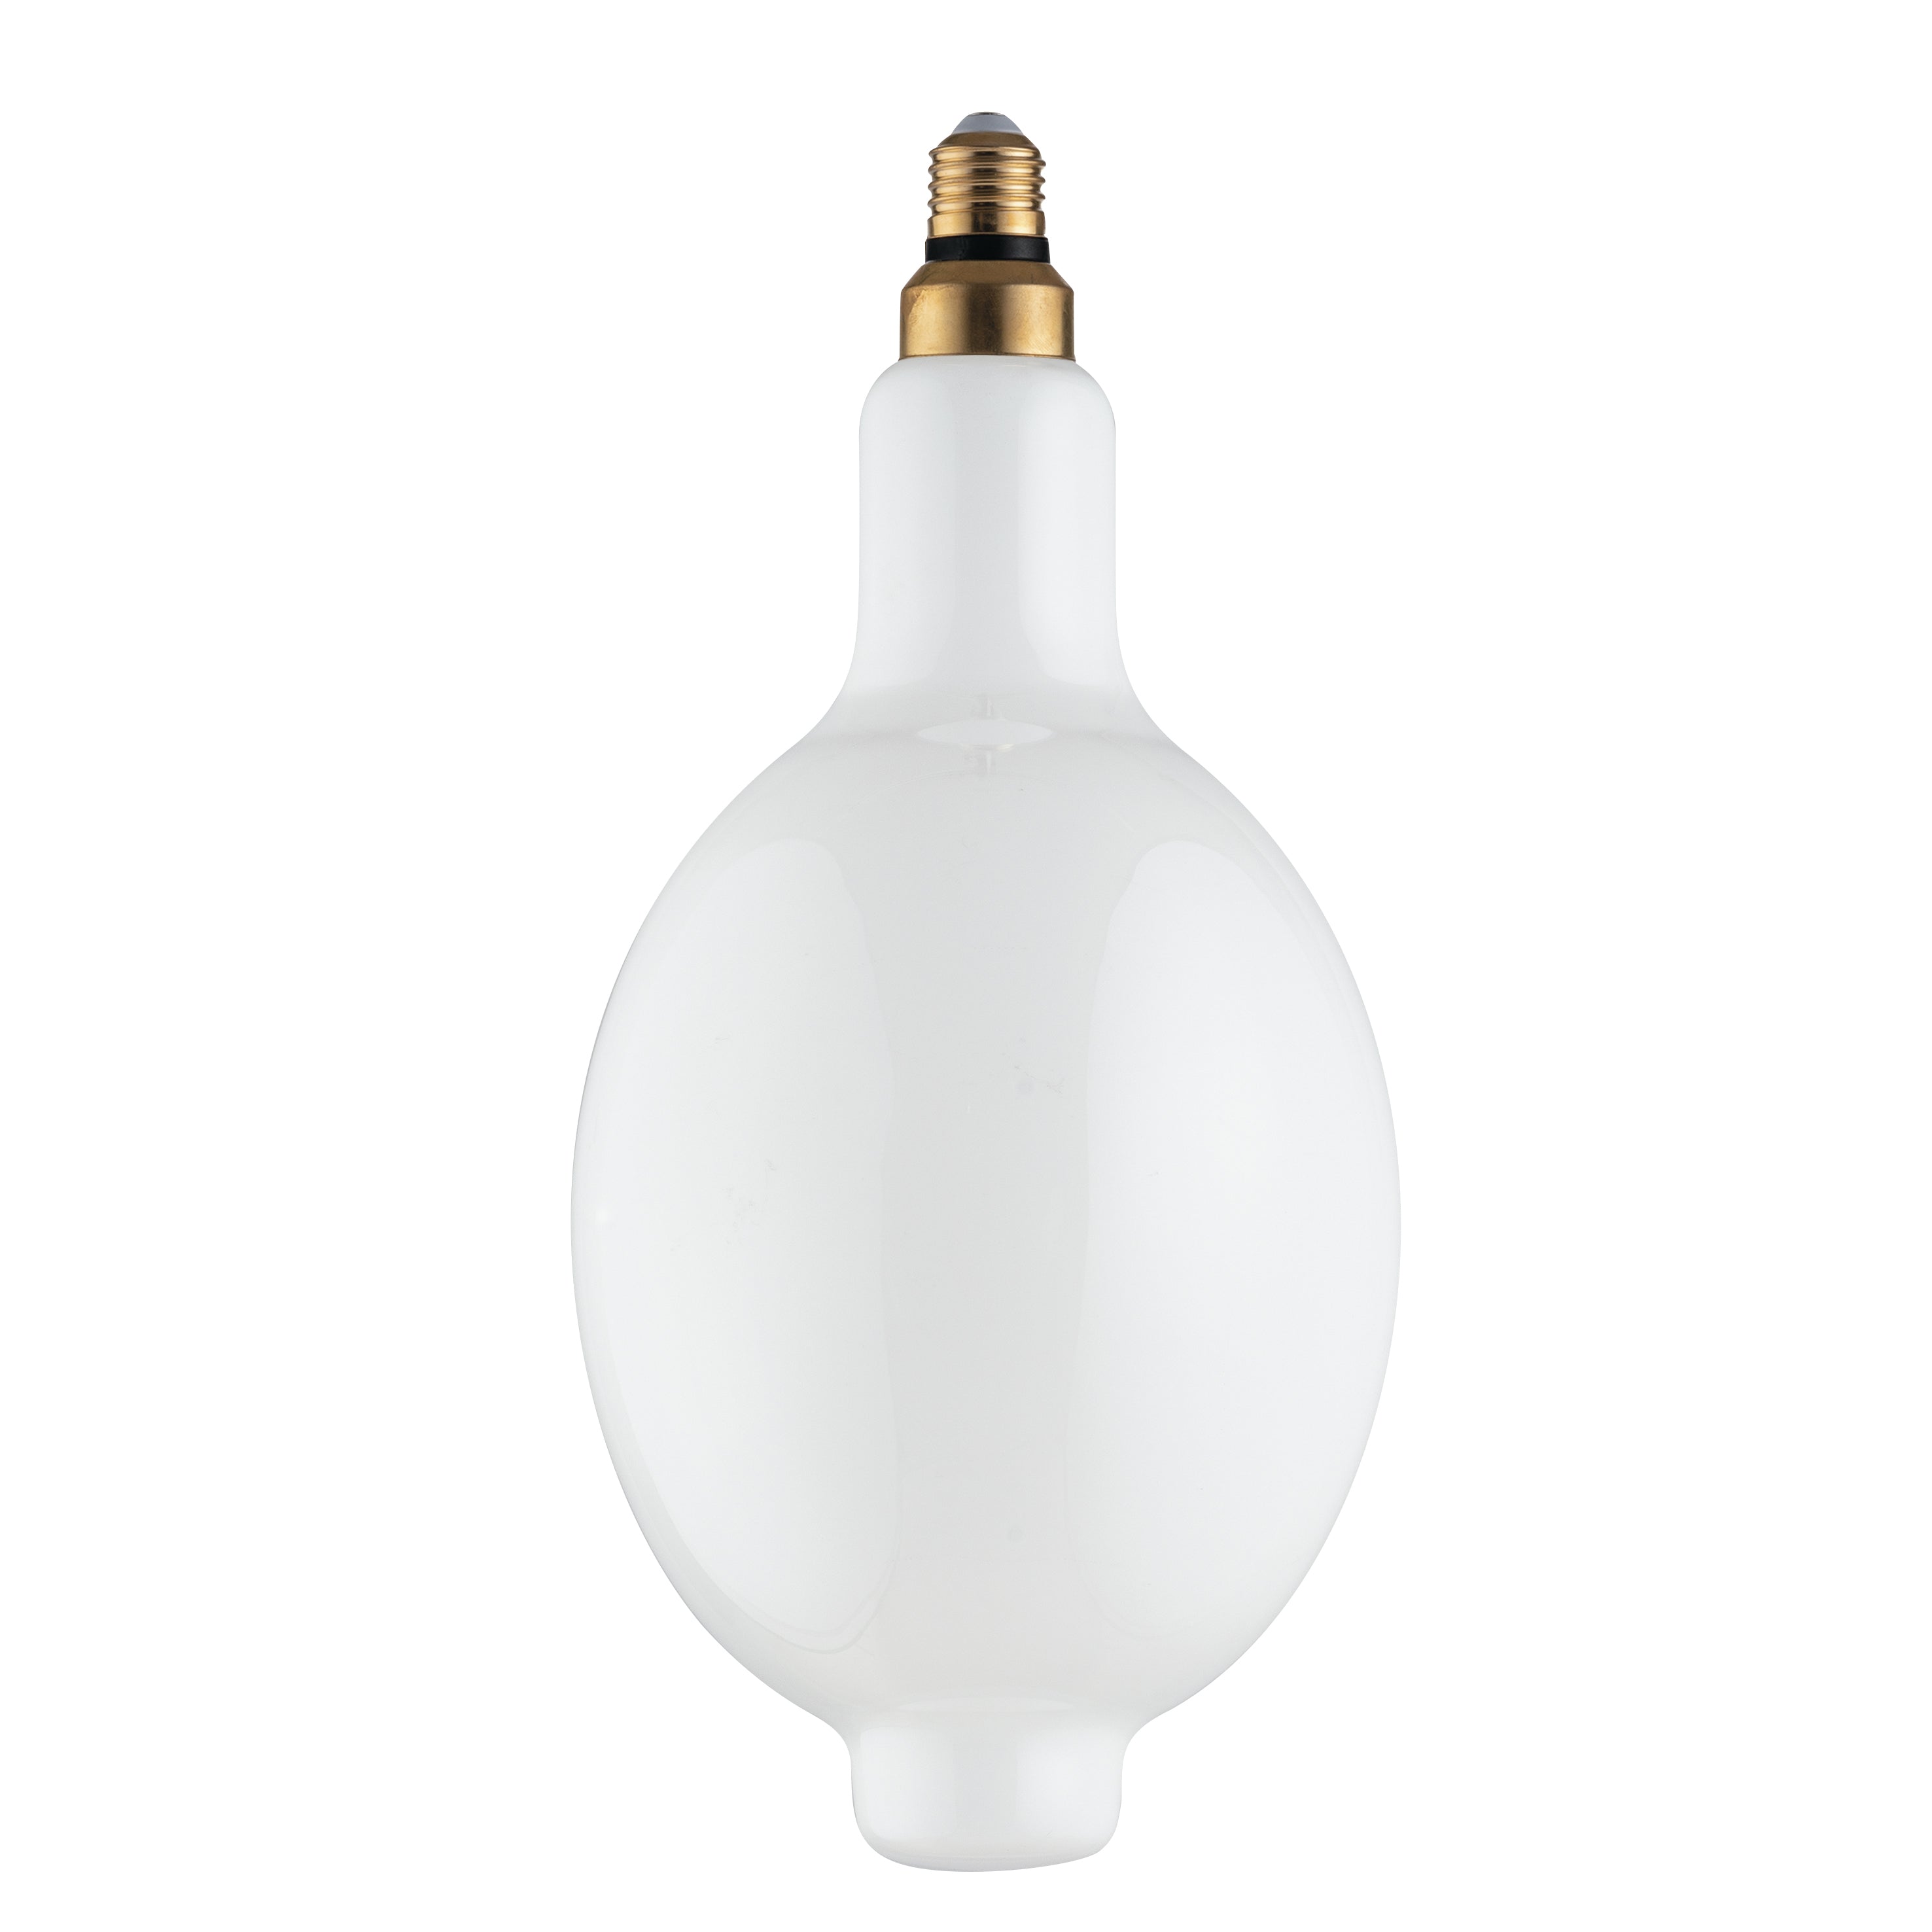 Bombilla decorativa LED LUXA 8W, casquillo E27, luz natural 38,5x18 cm.